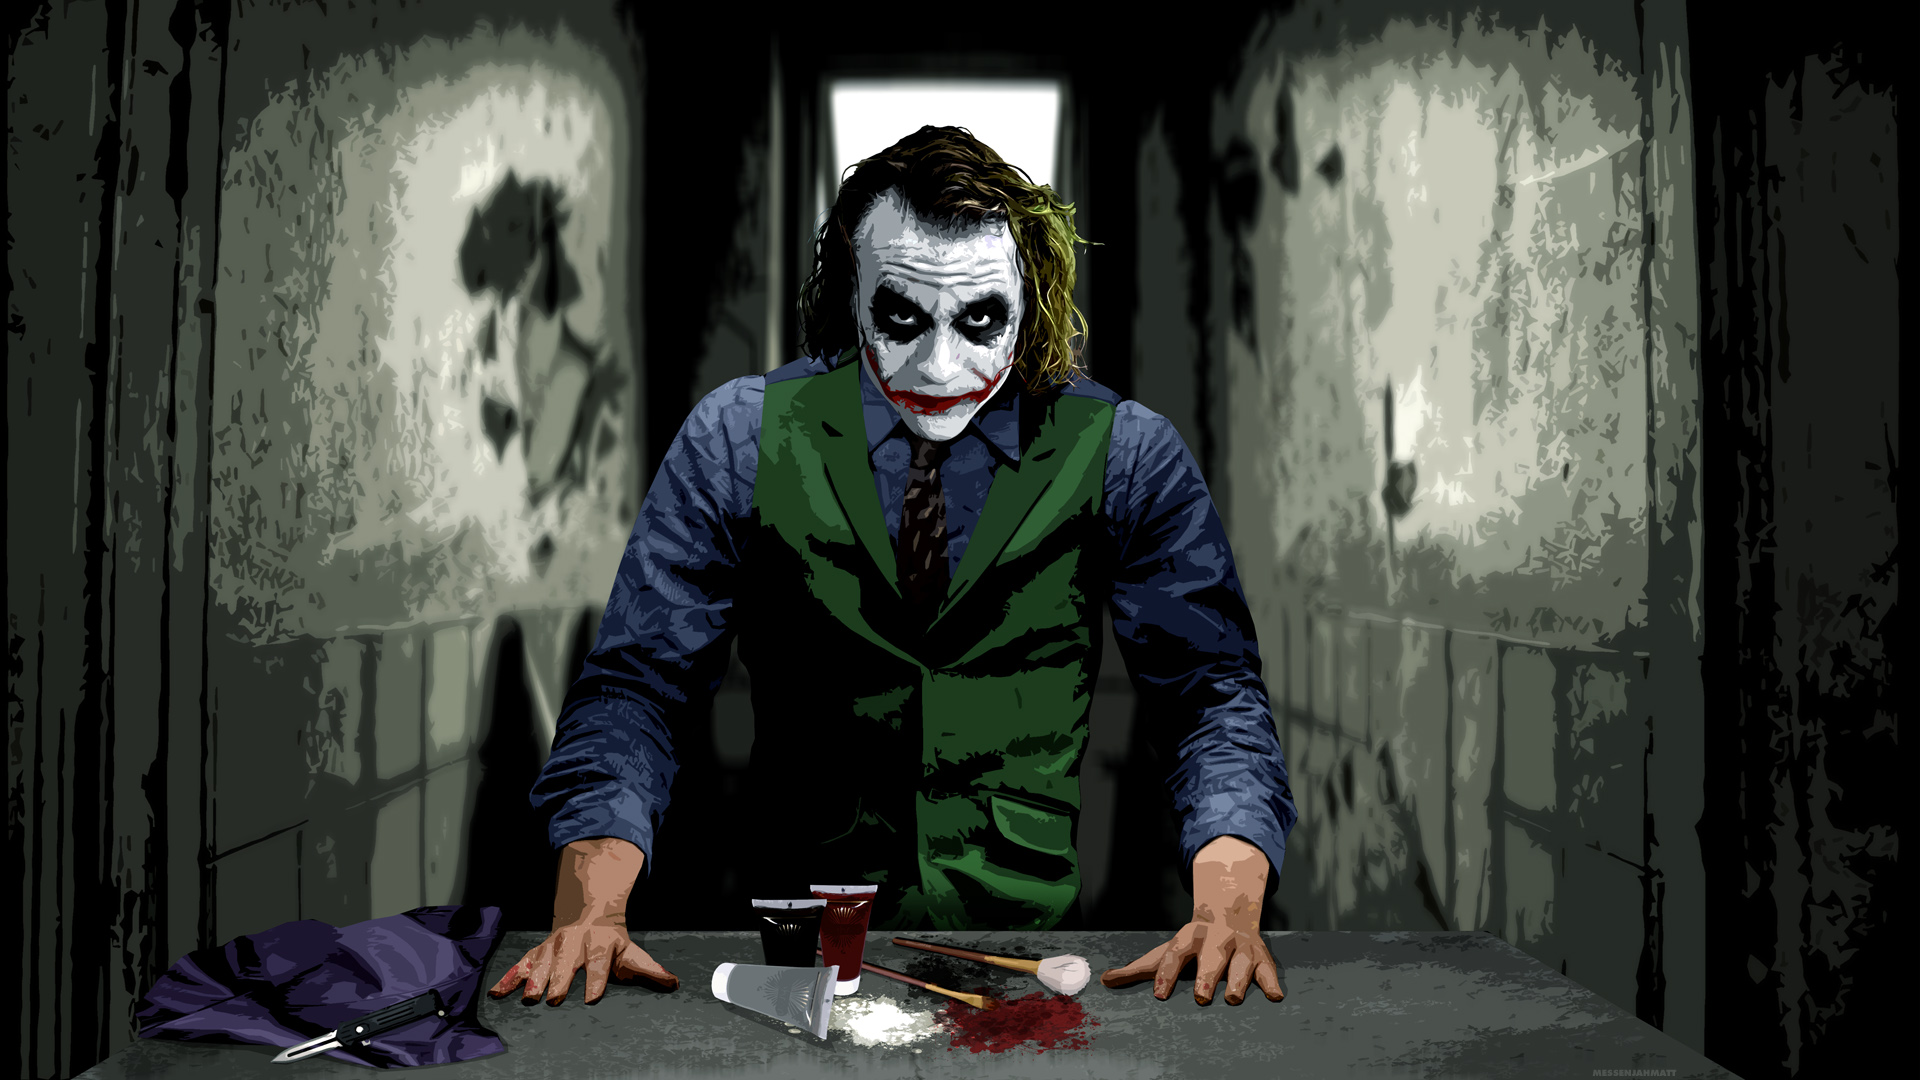 35 Gambar Wallpaper Hd Horror Joker terbaru 2020